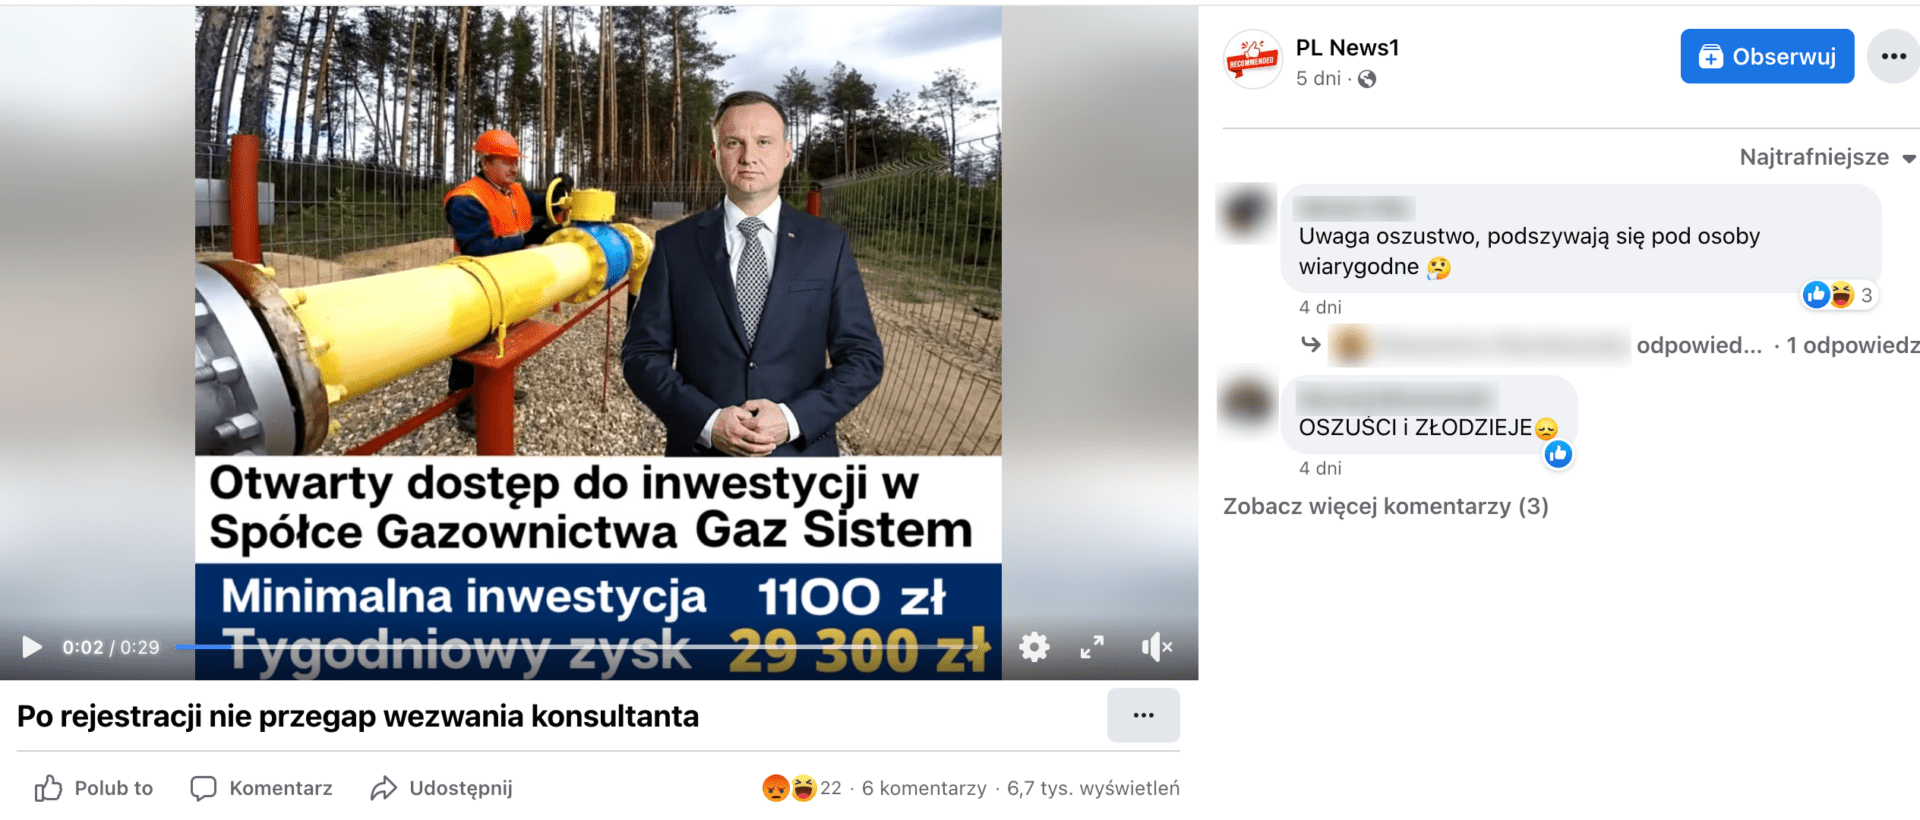 Zrzut ekranu posta na Facebooku. W kadrze omawianego filmu znajduje się prezydent Andrzej Duda w granatowym garniturze i szarym krawacie. Stoi na tle zdjęcia, człowieka w kasku i odzieży ochronnej obsługującego zawór.